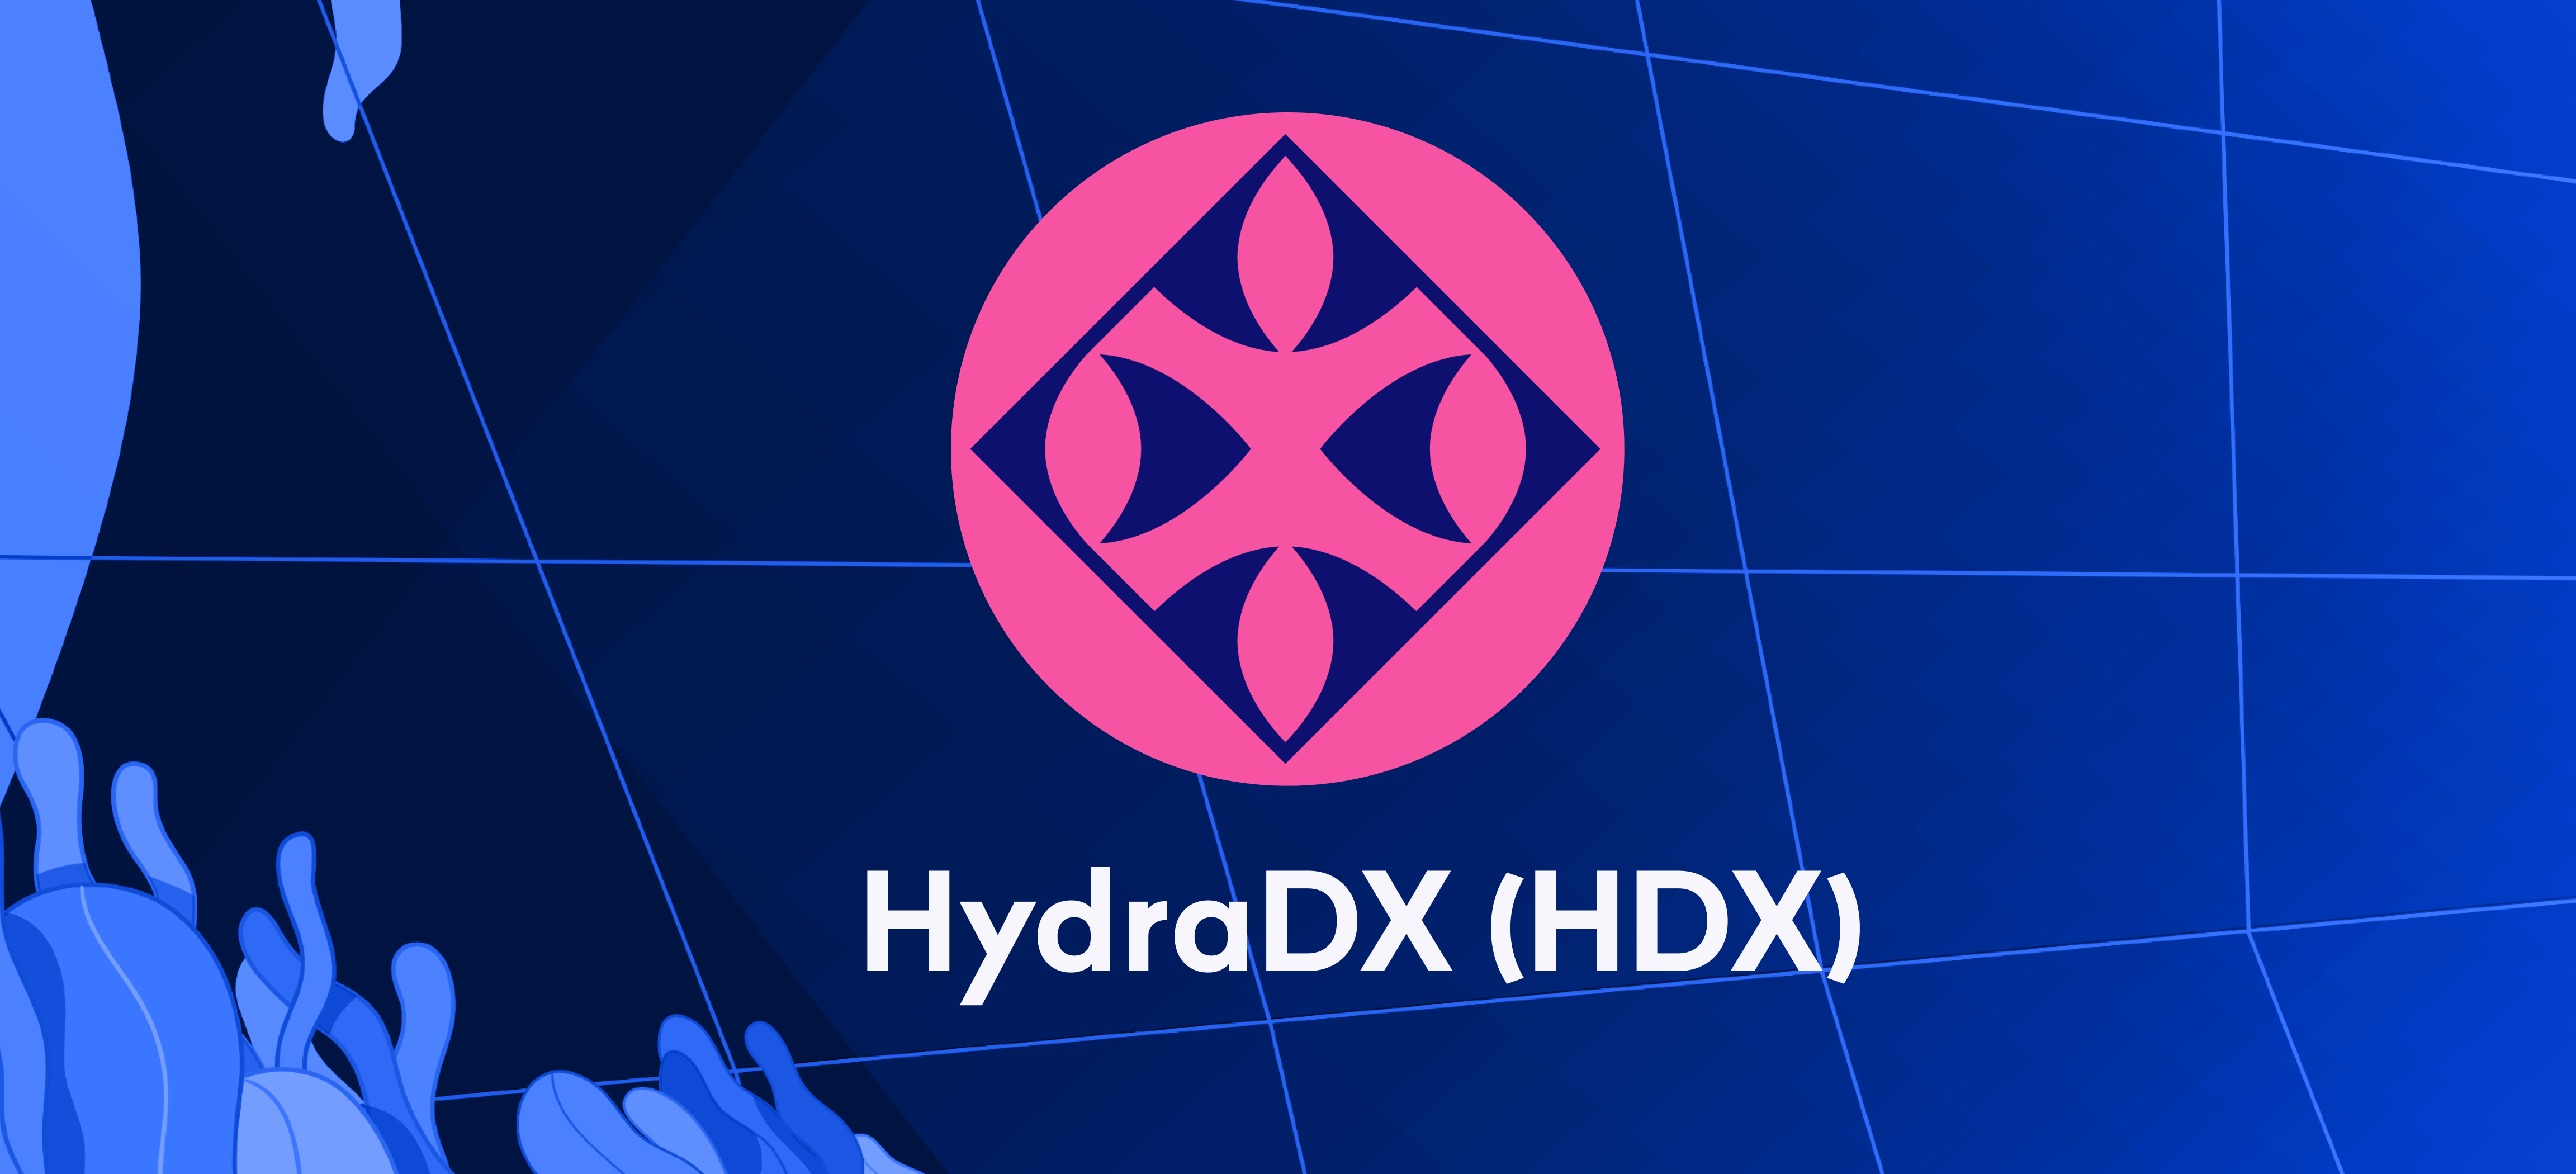 Giao dịch cho HydraDX (HDX) bắt đầu từ ngày 24 tháng XNUMX – gửi tiền ngay bây giờ!